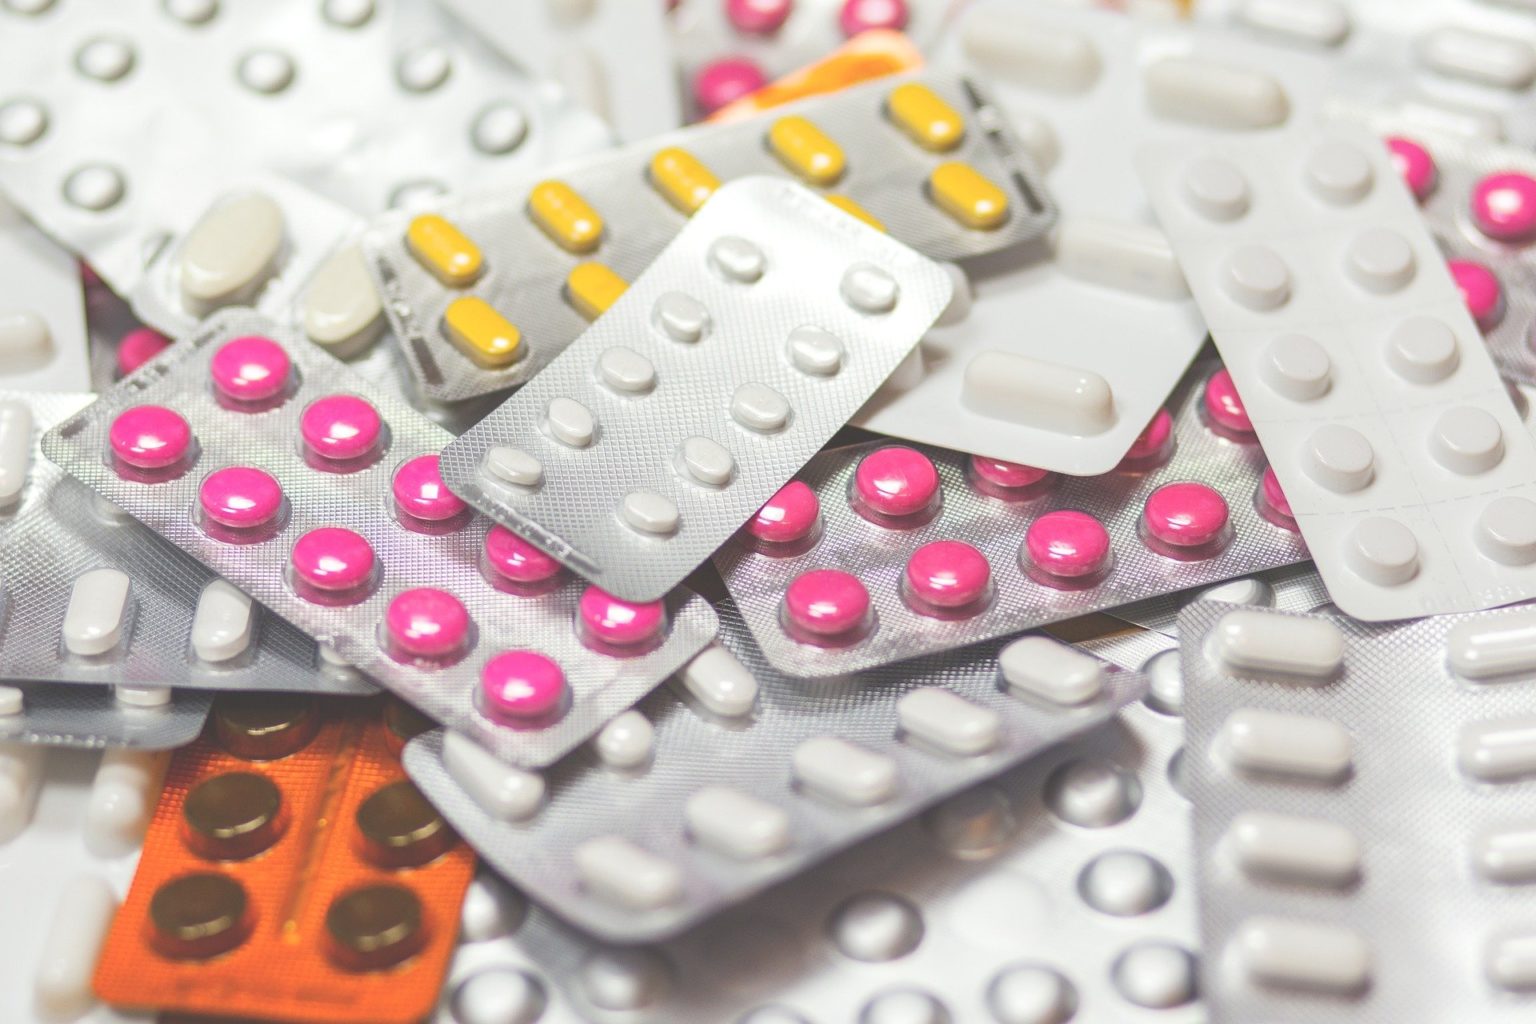 Лекарства повышенного спроса исчезли из алматинских аптек